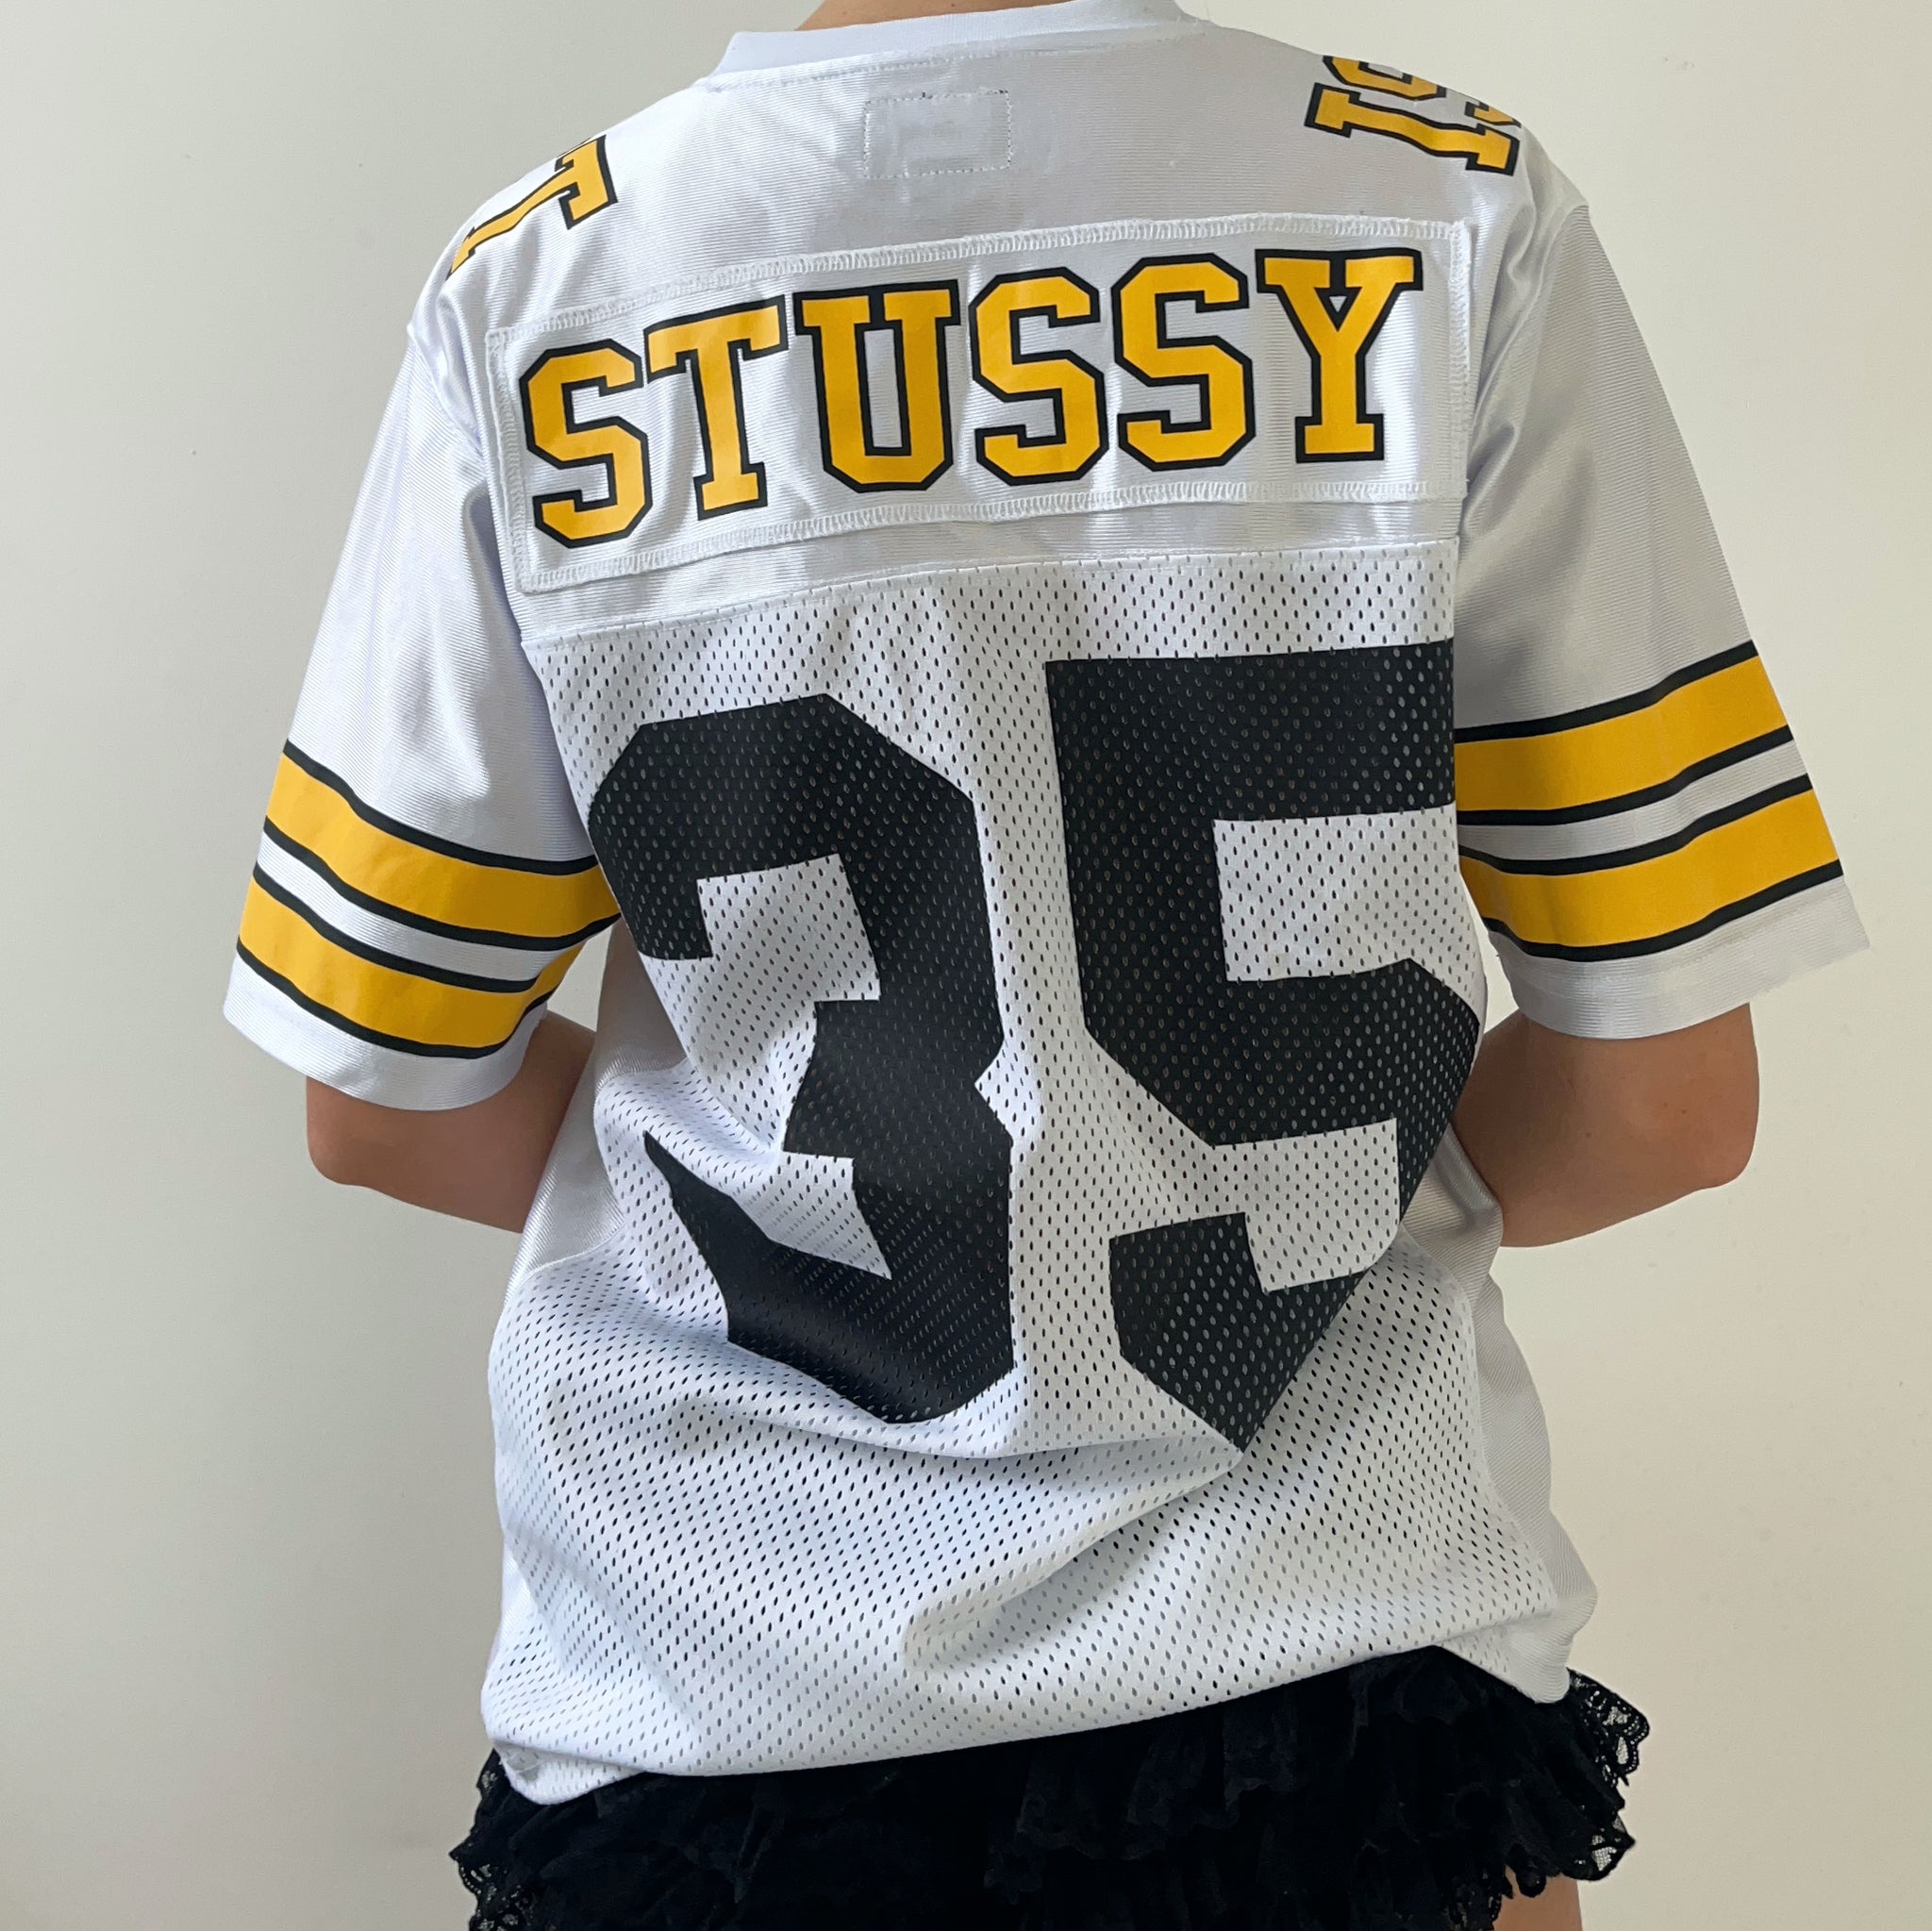 Stussy Jersey (S)